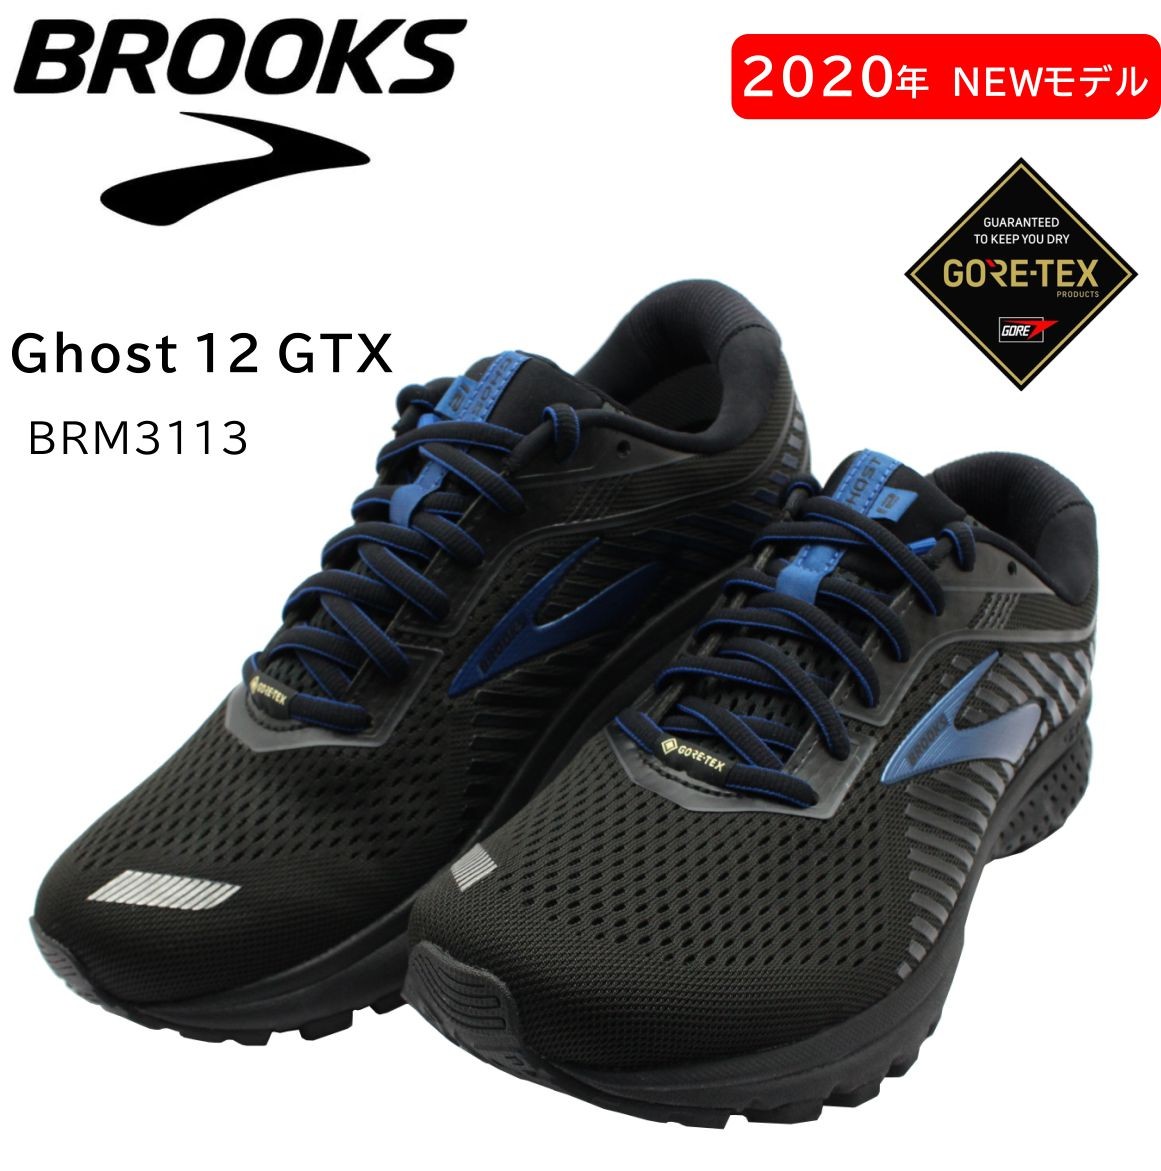 BROOKS ブルックス Ghost12 GTX ゴースト12 ゴアテックス 防水 メンズ ランニングシューズ BRM3113 D幅 ブラック  Black